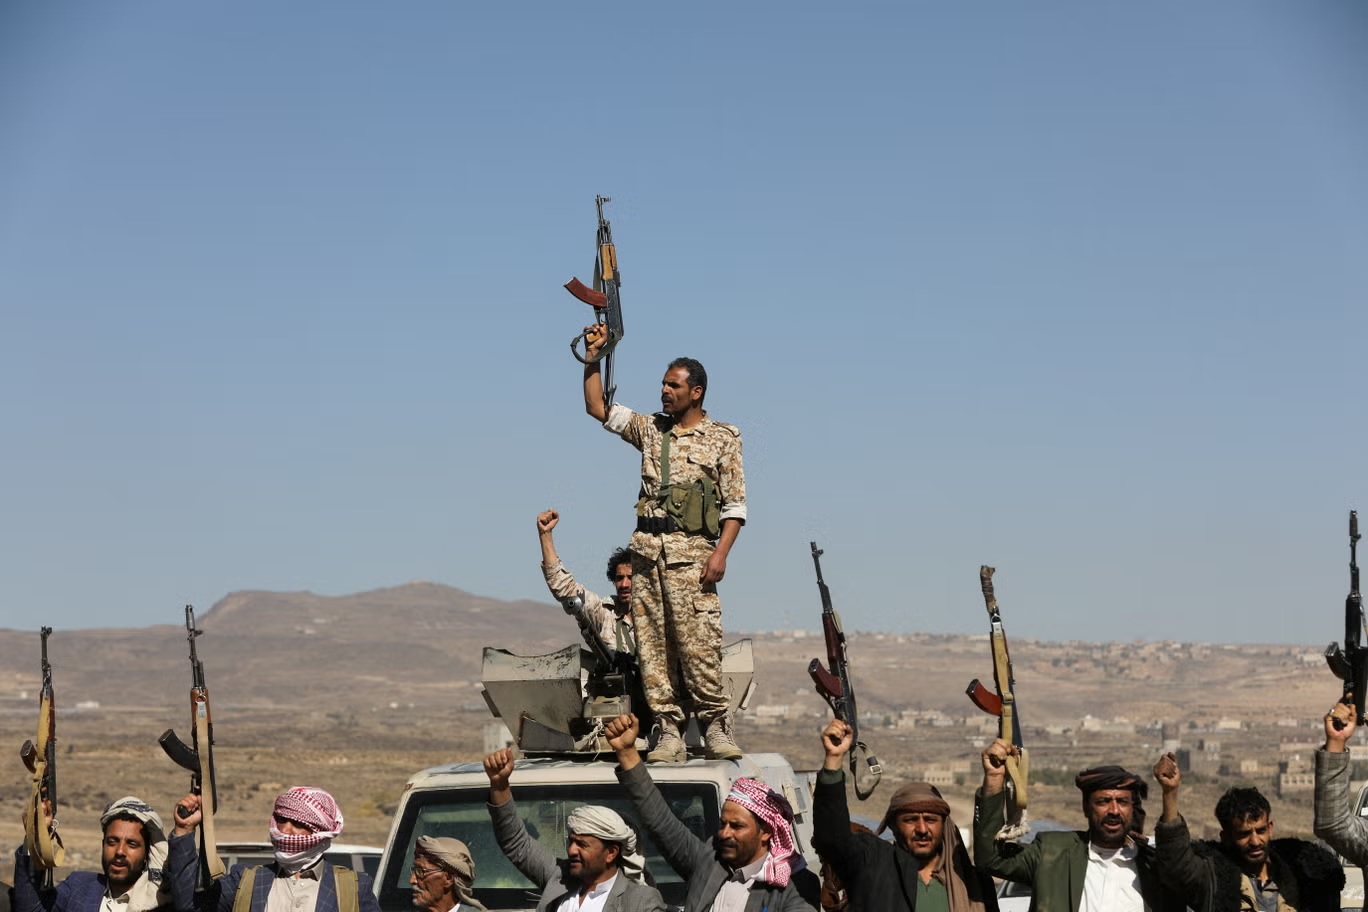 مقاتلون حوثيون ومؤيدون قبليون يرفعون أسلحتهم النارية خلال احتجاج على الضربات الأخيرة التي قادتها الولايات المتحدة على أهداف حوثية (رويترز)